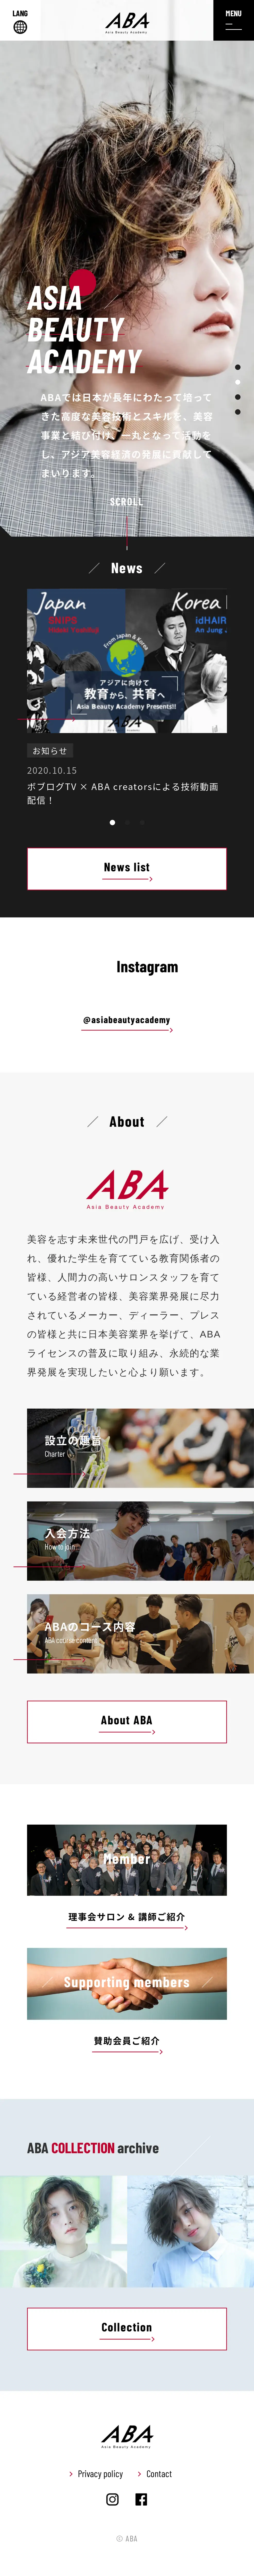 キャプチャ画面 会社名:一般社団法人アジアビューティアカデミープロジェクト名:ABA | Asia Beauty Academy 画面名:A デバイス名:SPカテゴリ:教育・学校タグ:A,SP